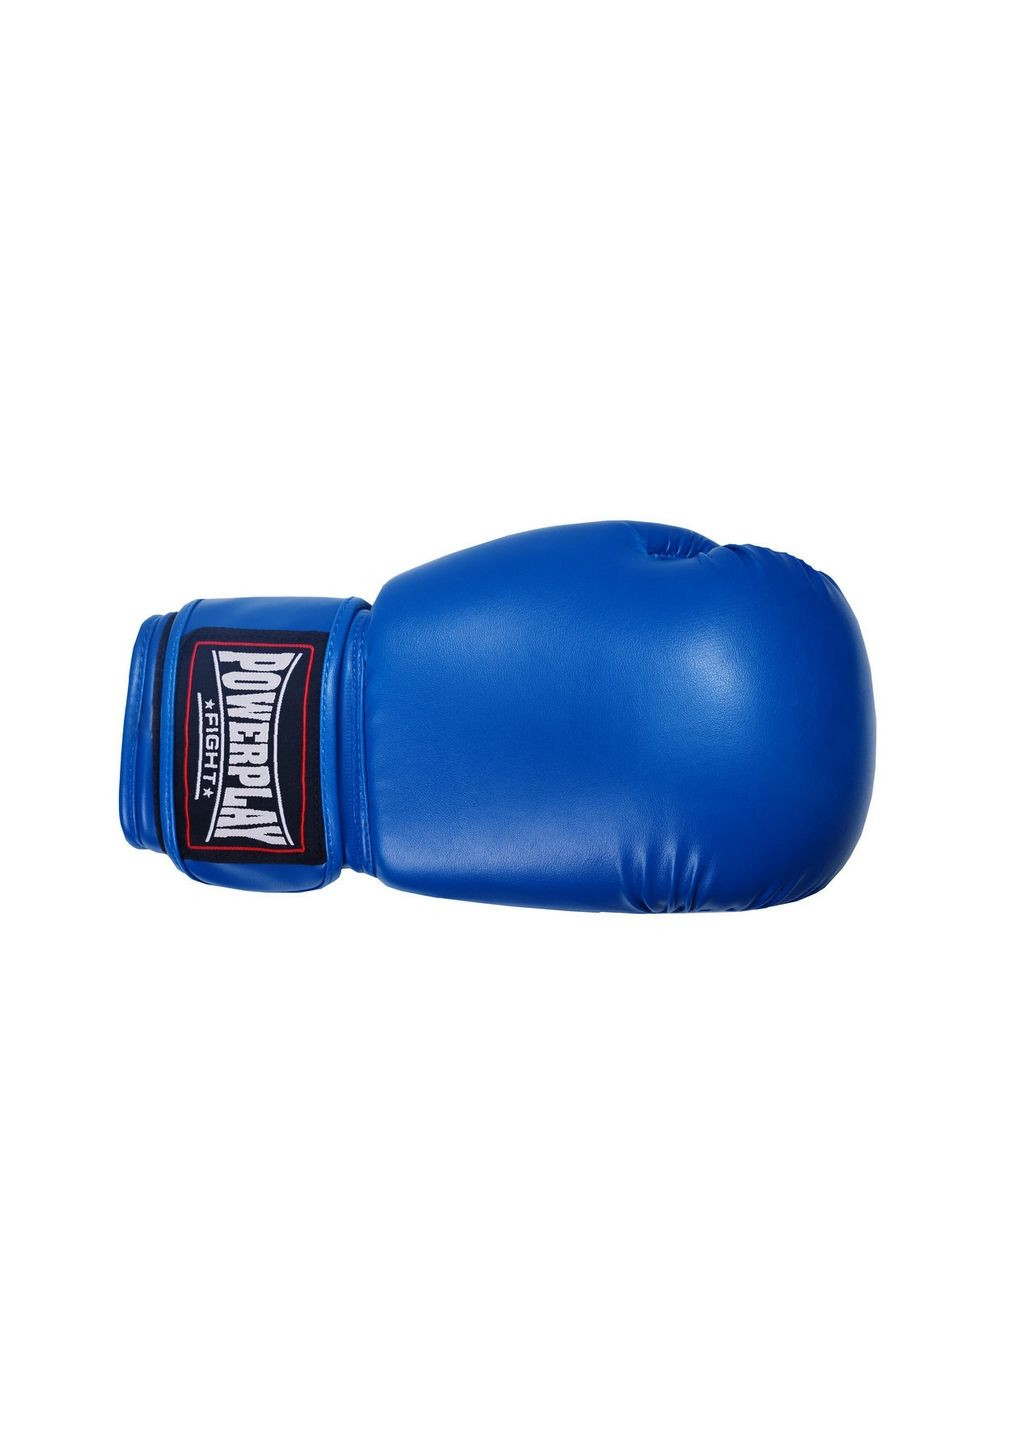 Боксерские перчатки PowerPlay (282587042)